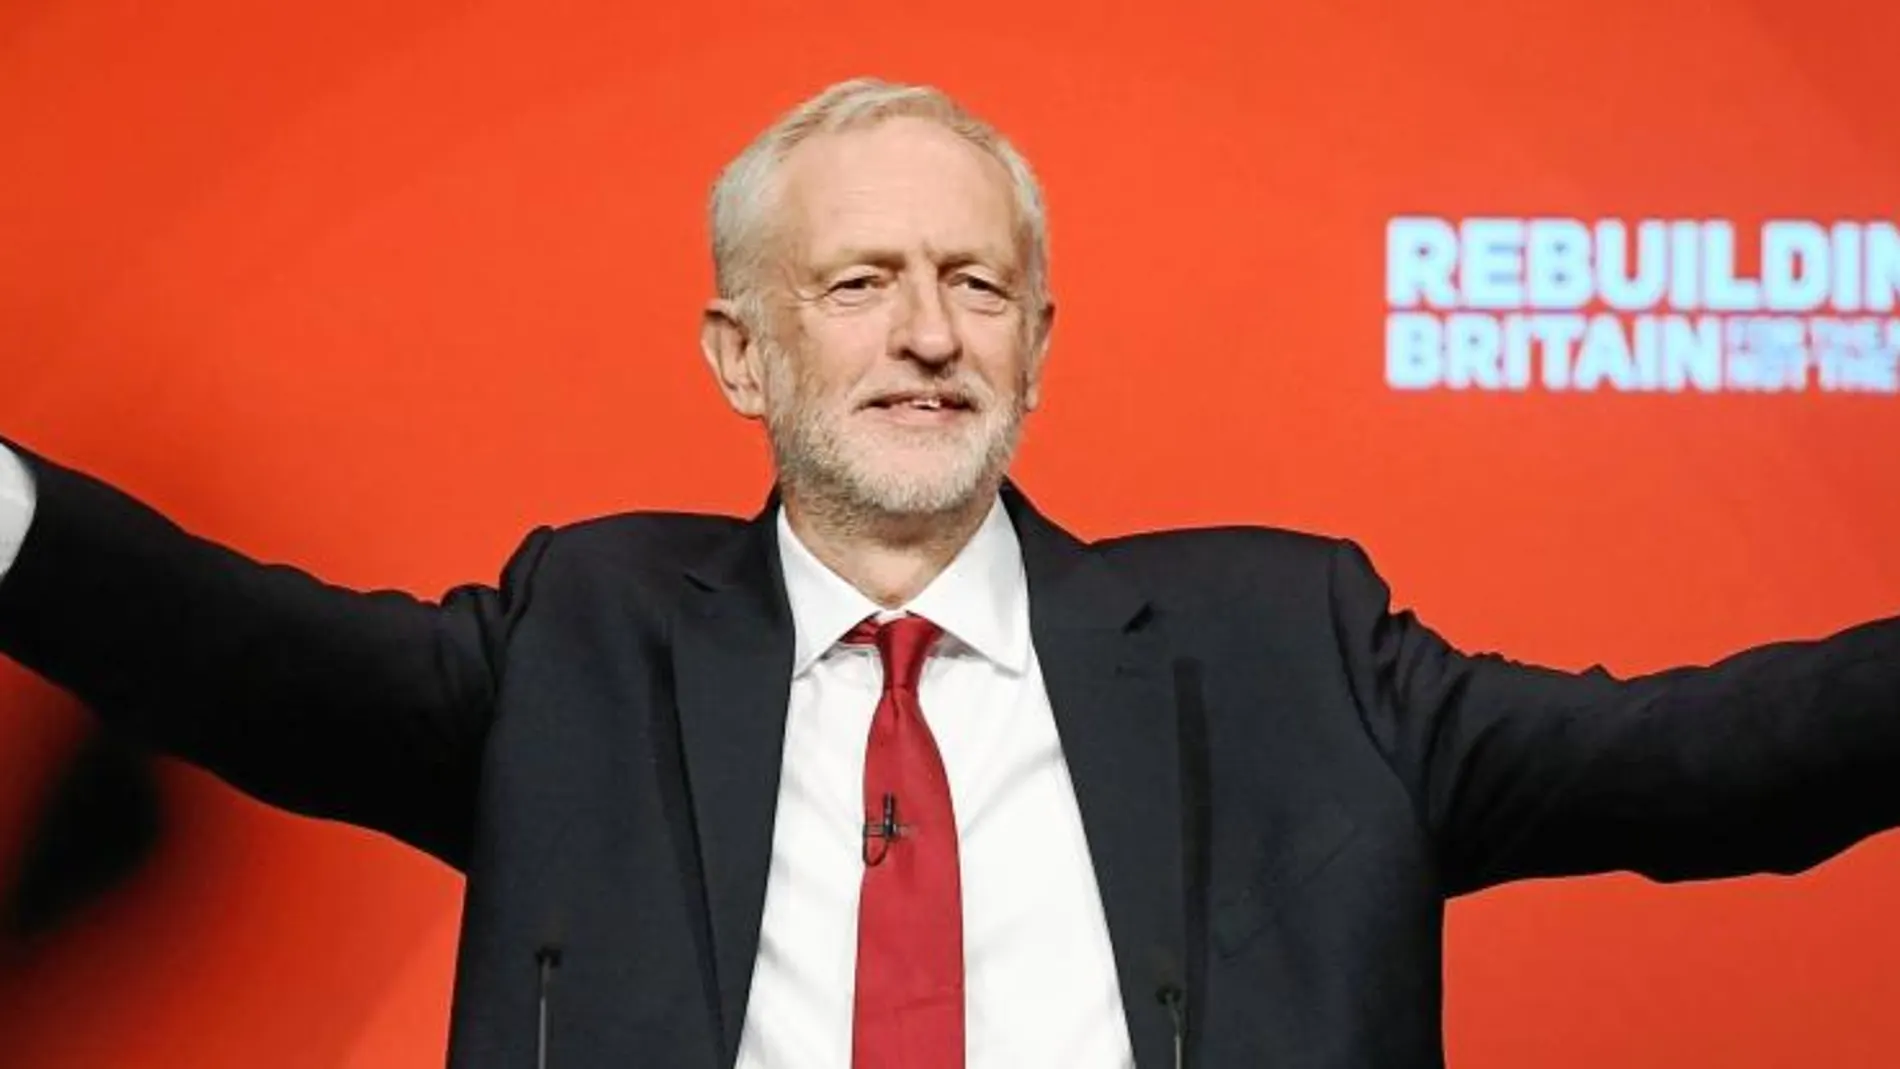 El líder laborista, Jeremy Corbyn, dedicó solo cuatro minutos al Brexit, el tema principal de la Conferencia Anual de su partido, que finalizó ayer en Liverpool